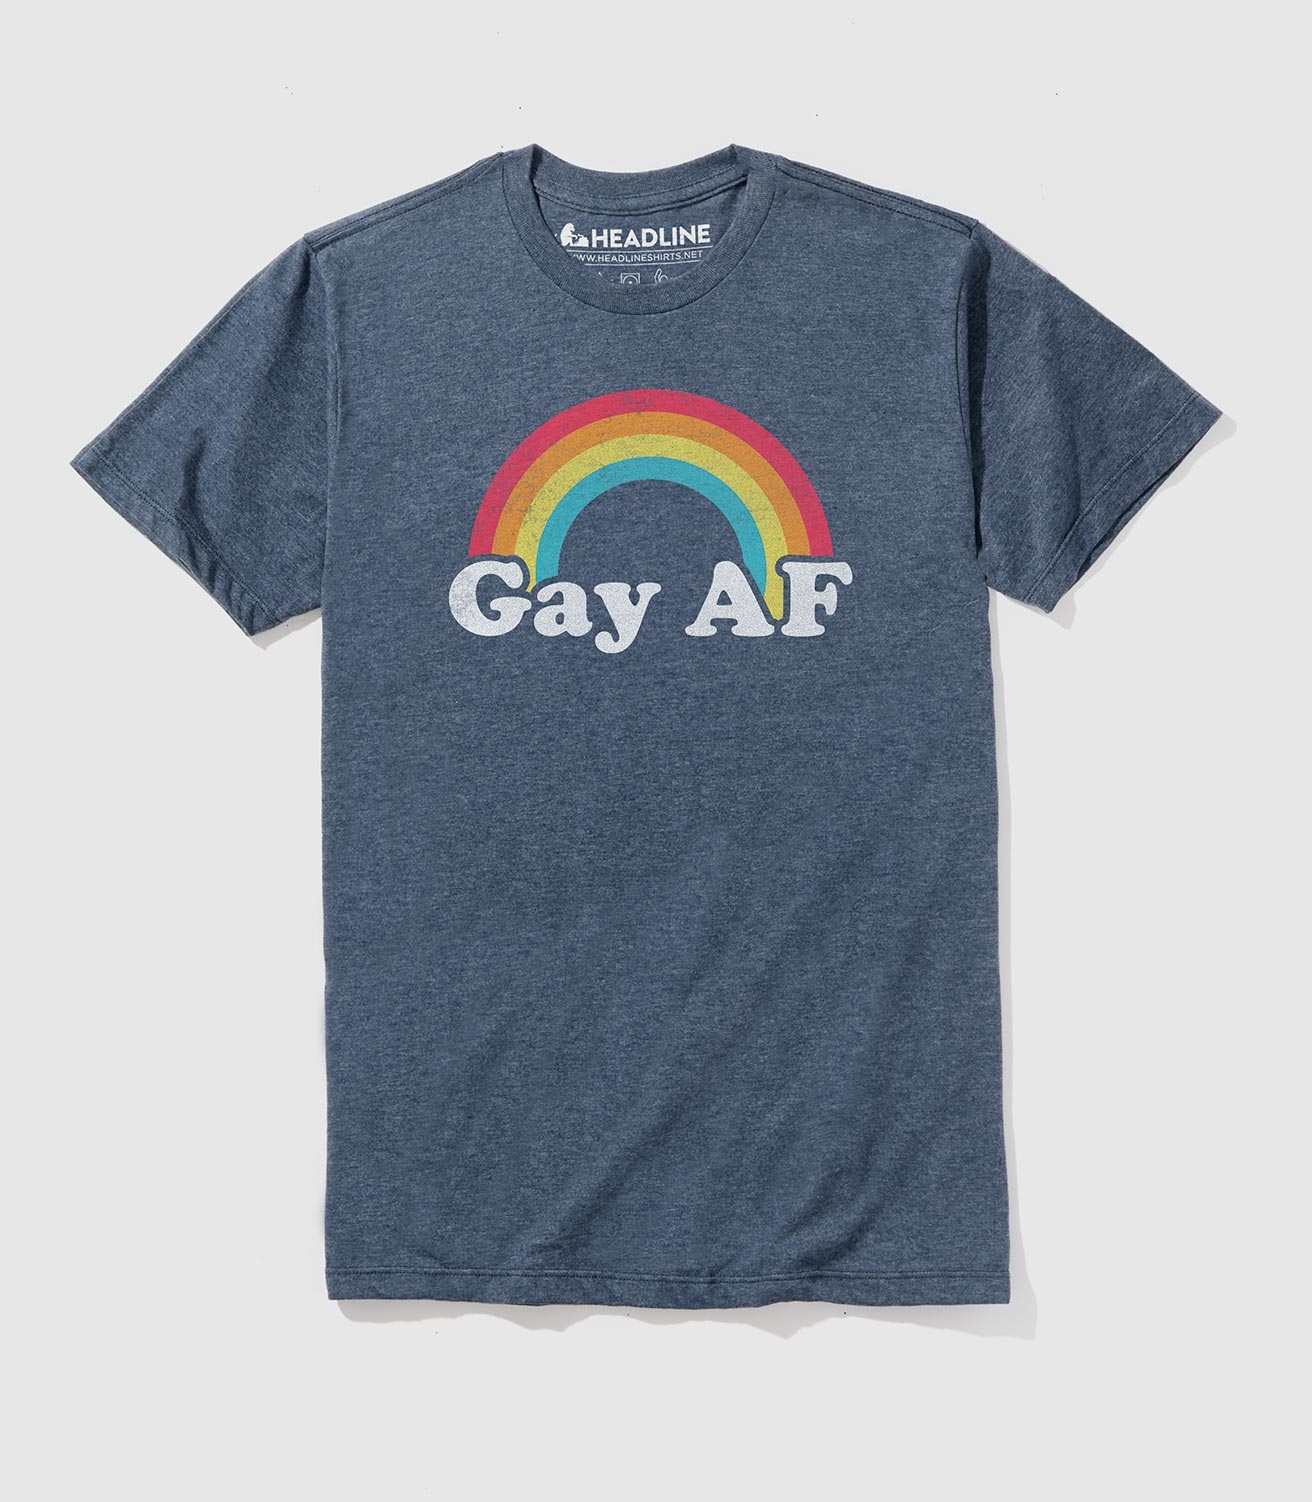 Gay AF Men S Funny Pride T Shirt Headline Shirts